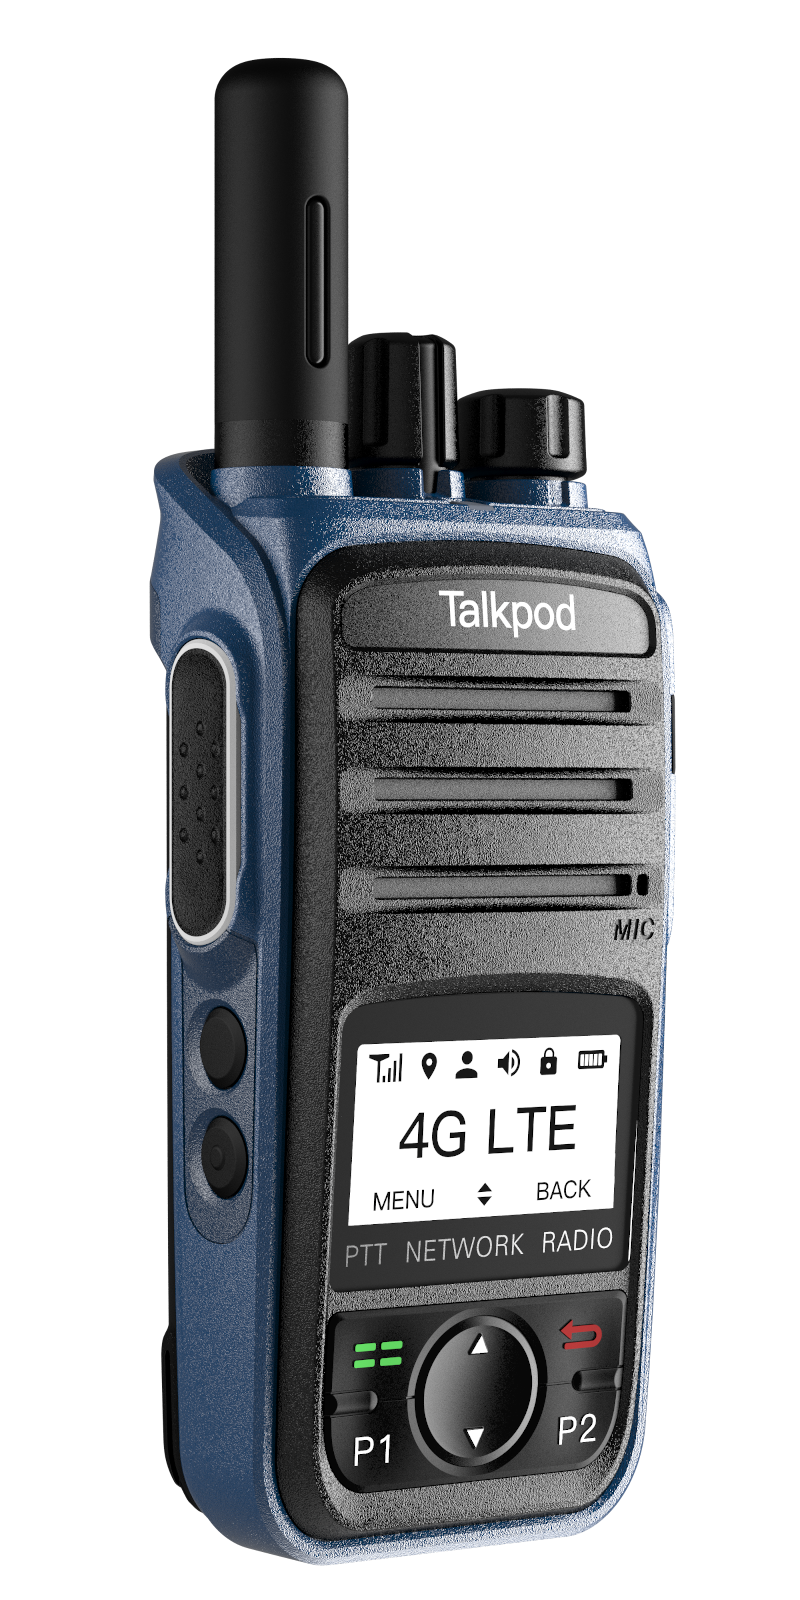 Talkpod LTE N55 POC Radio